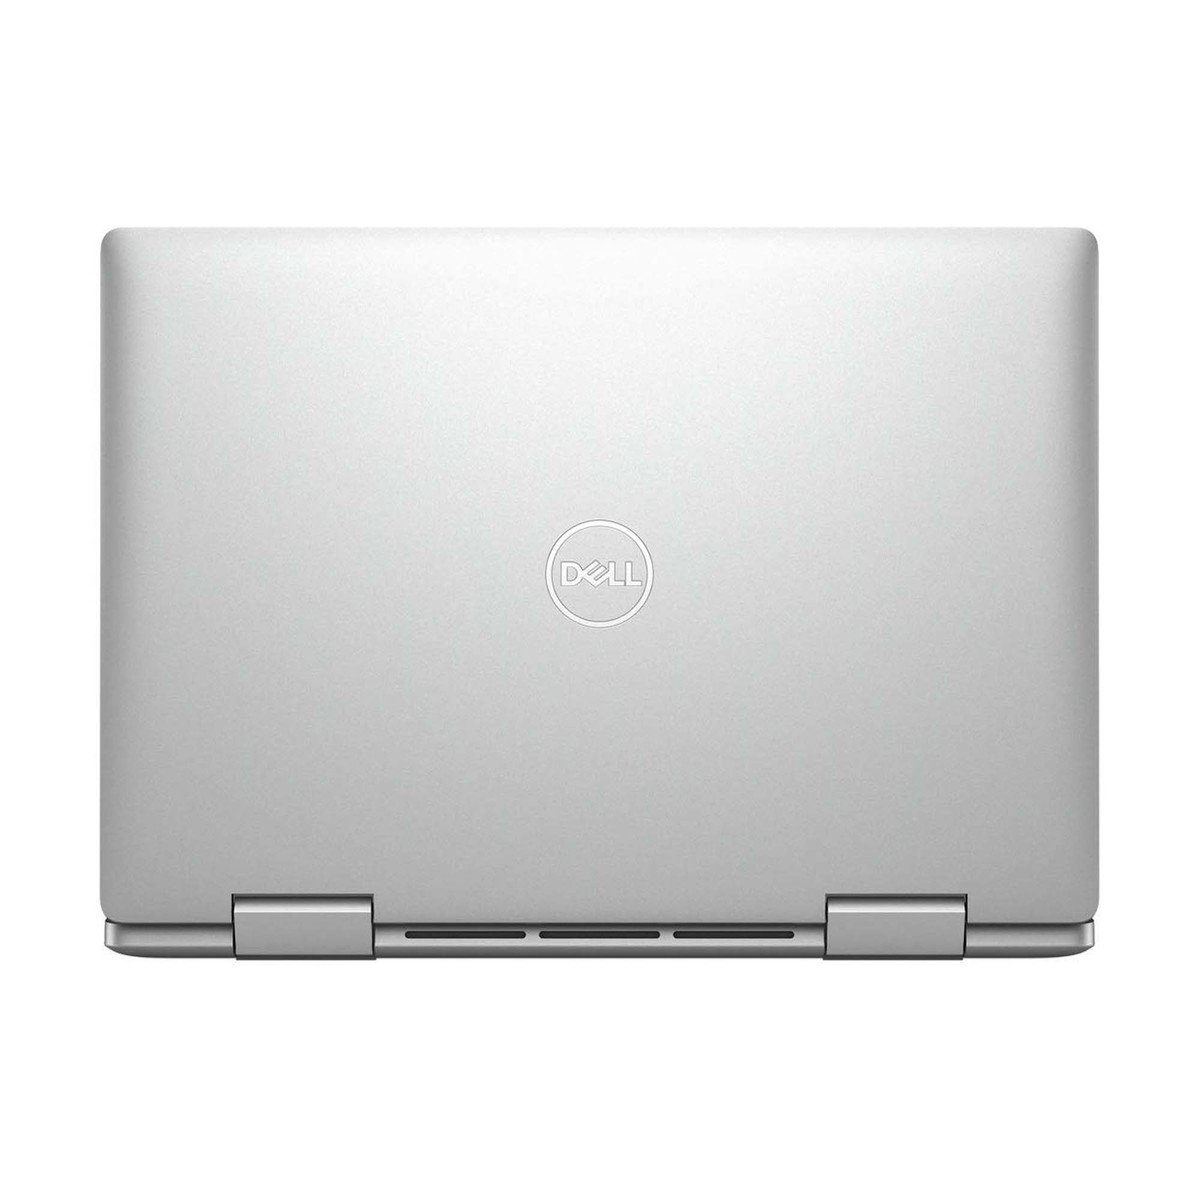 Dell Inspiron 2in1 Laptop 5491 Core i7-10510U,16GB,512GB SSD,GeForce MX230 2GB,14inch FHD,Windows 10,Silver